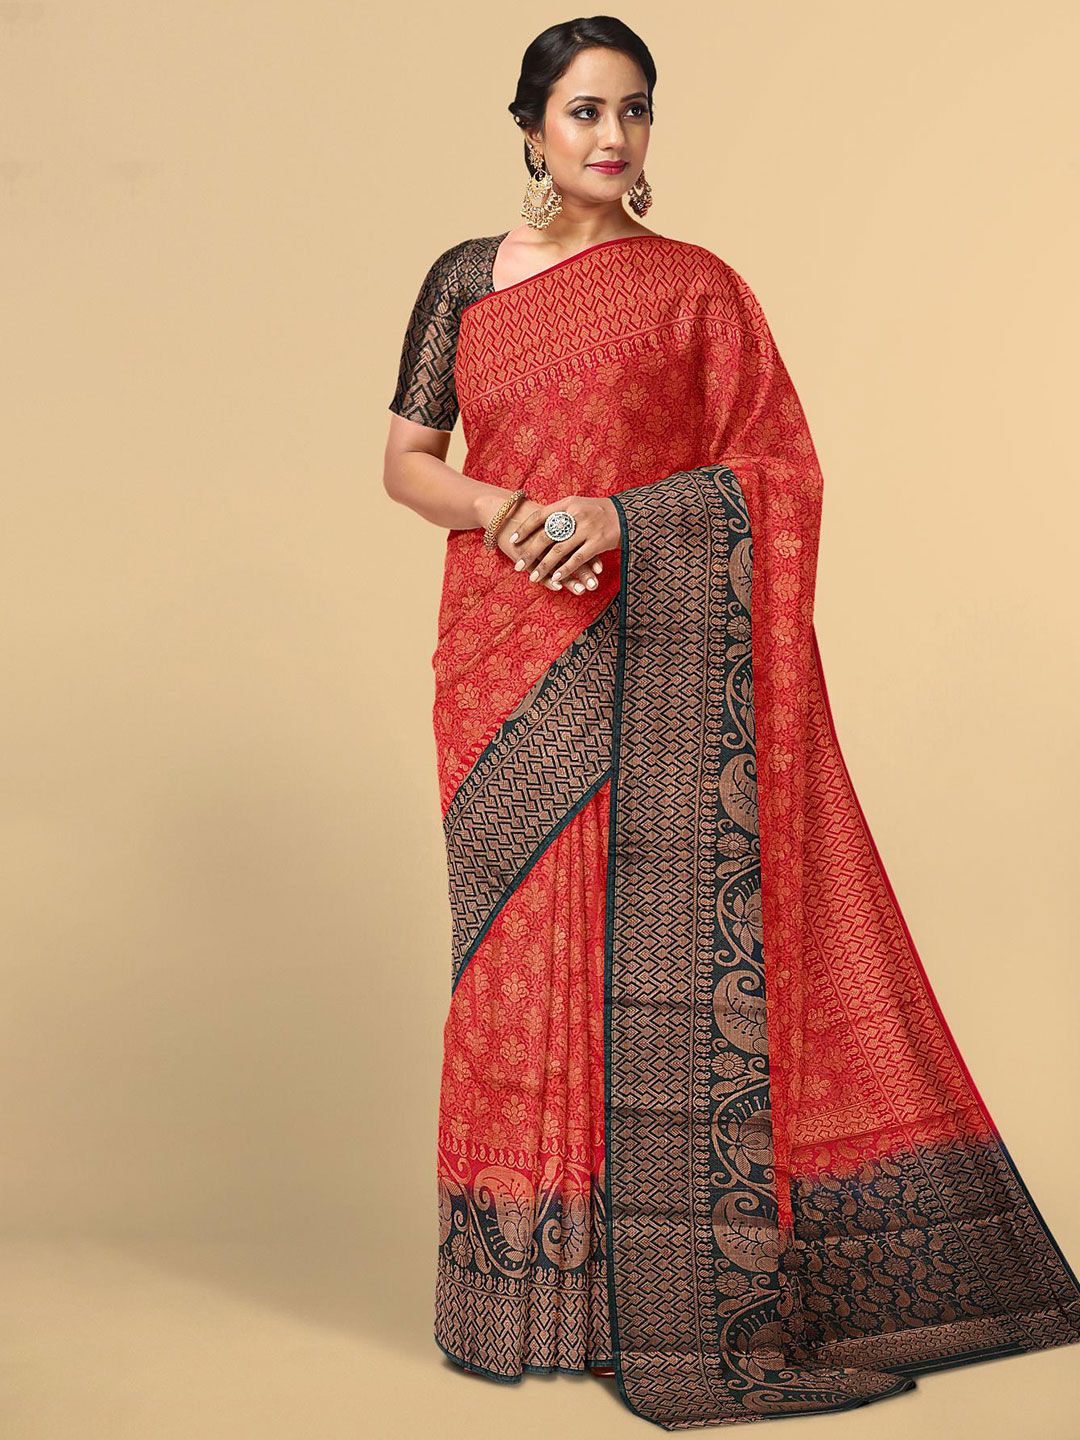 Kalamandir Red & Gold-Toned Woven Design Zari Silk Blend Saree Price in India